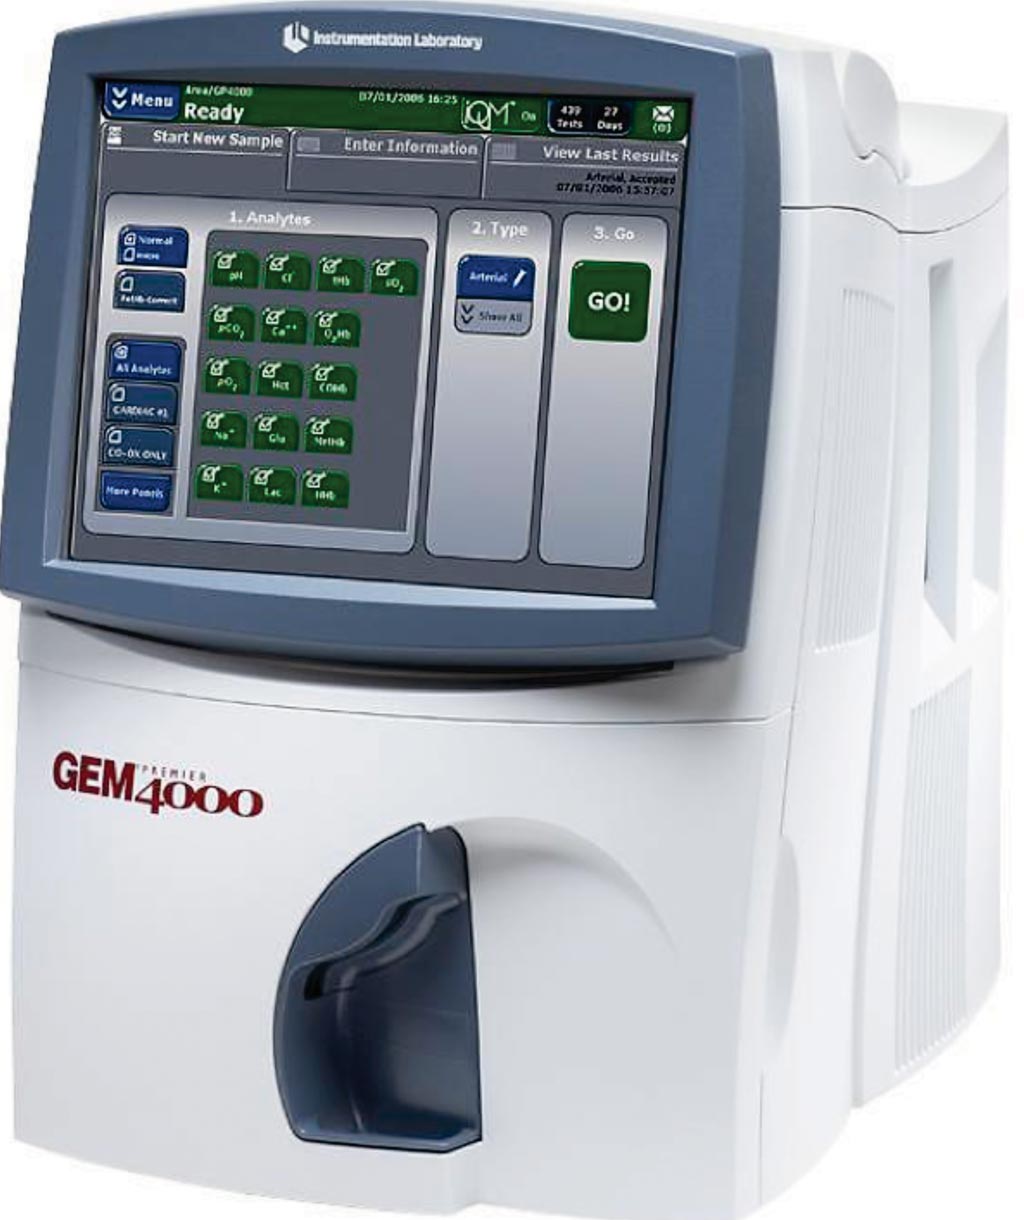 Image: The GEM 4000 whole blood analyzer (Photo courtesy of Werfen UK).